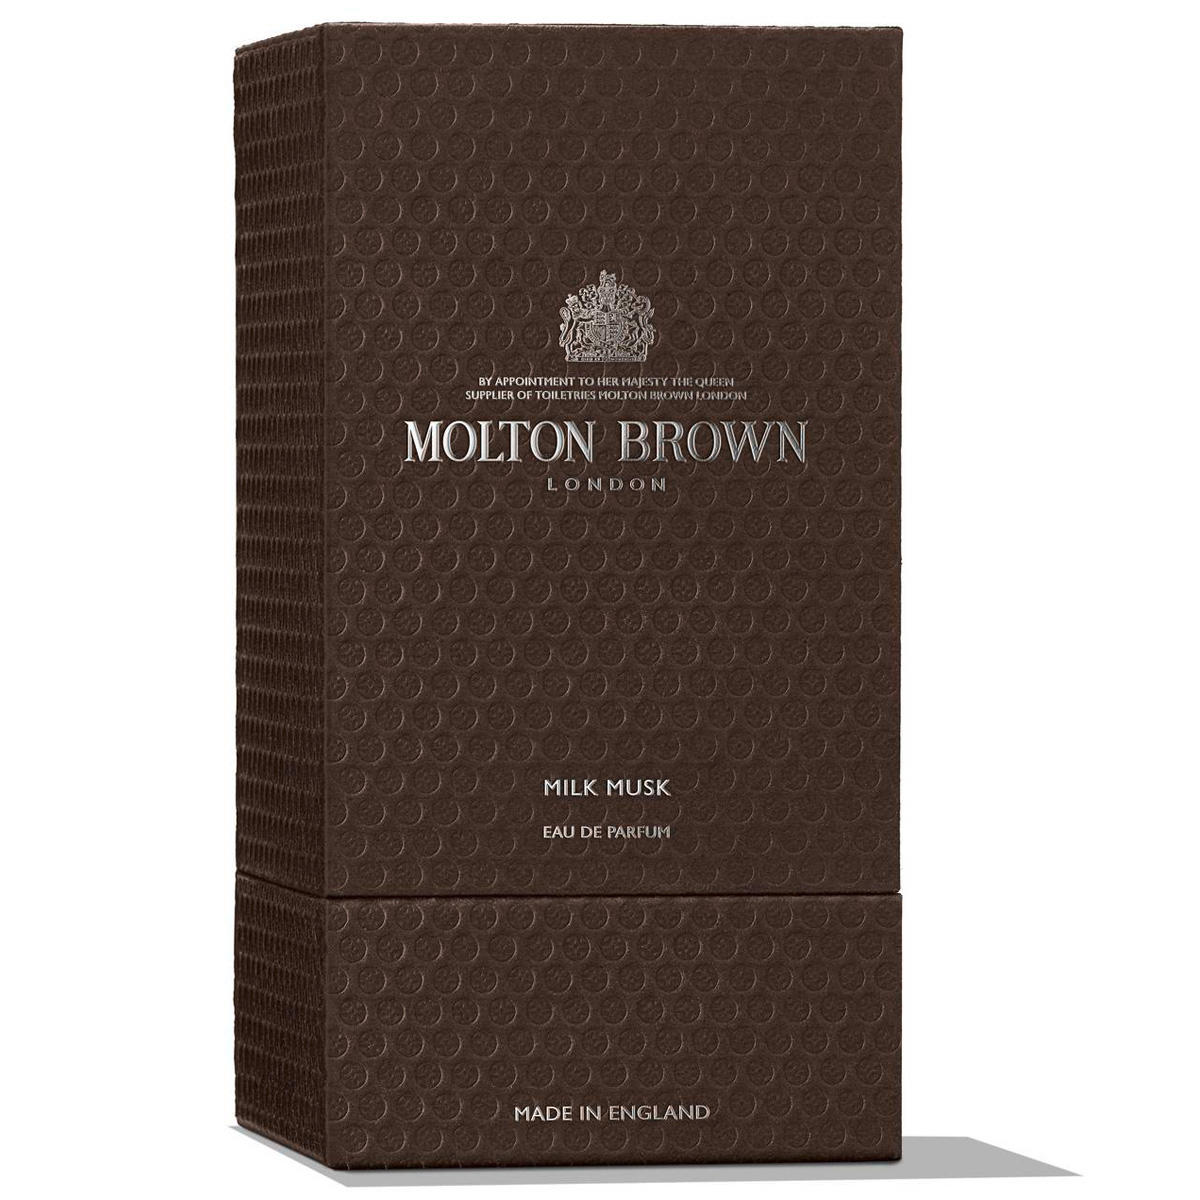 MOLTON BROWN Milk Musk Eau de Parfum 100 ml - 7